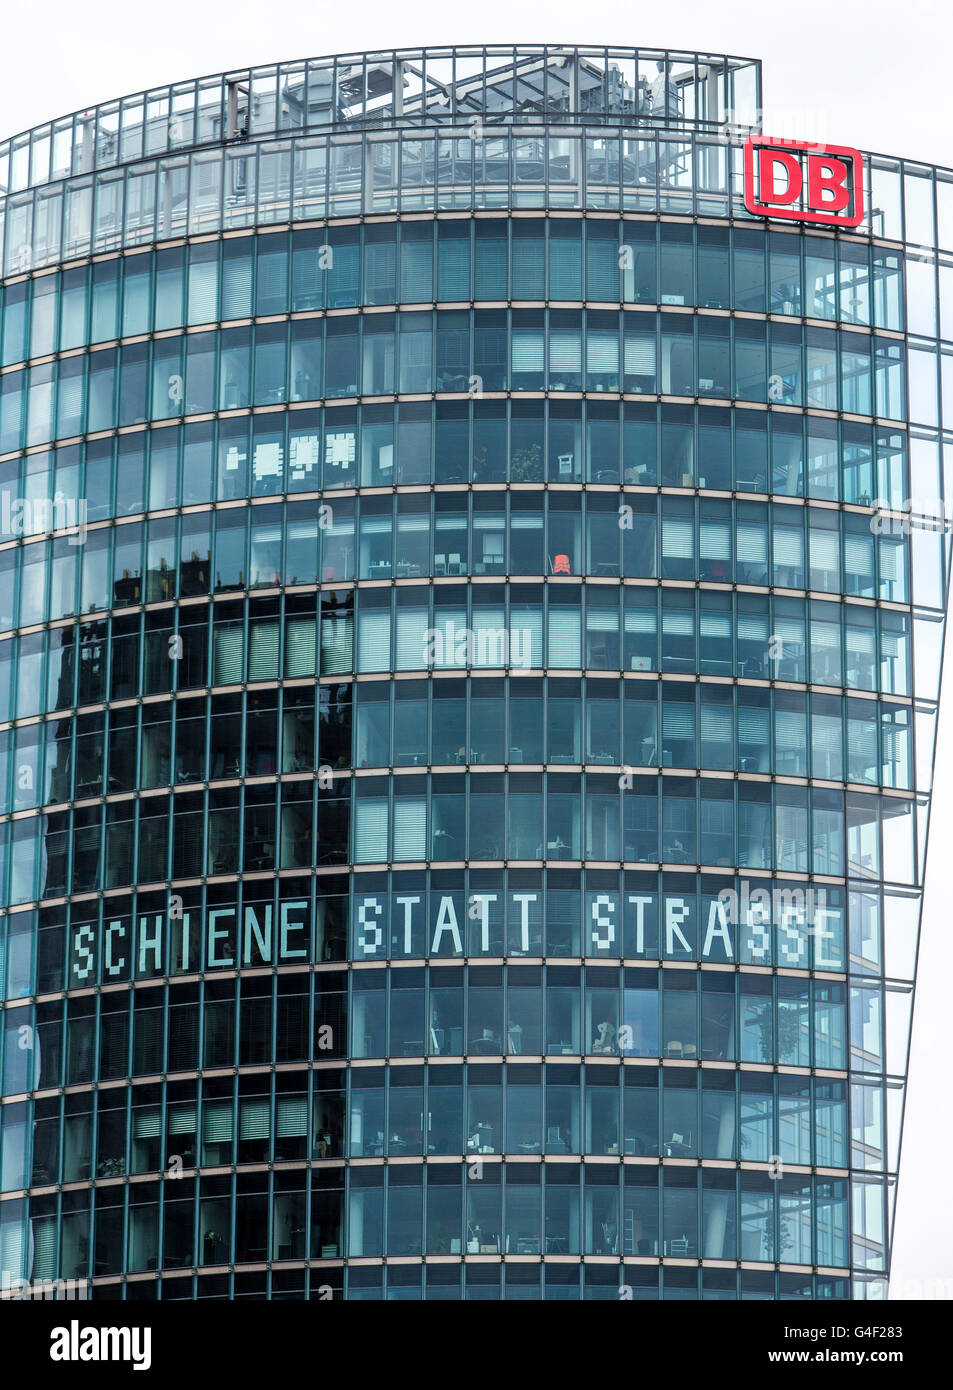 German Railways headquarters in Berlin, written on Potsdamer Platz, slogan rail instead of road in the windows, Germany Stock Photo